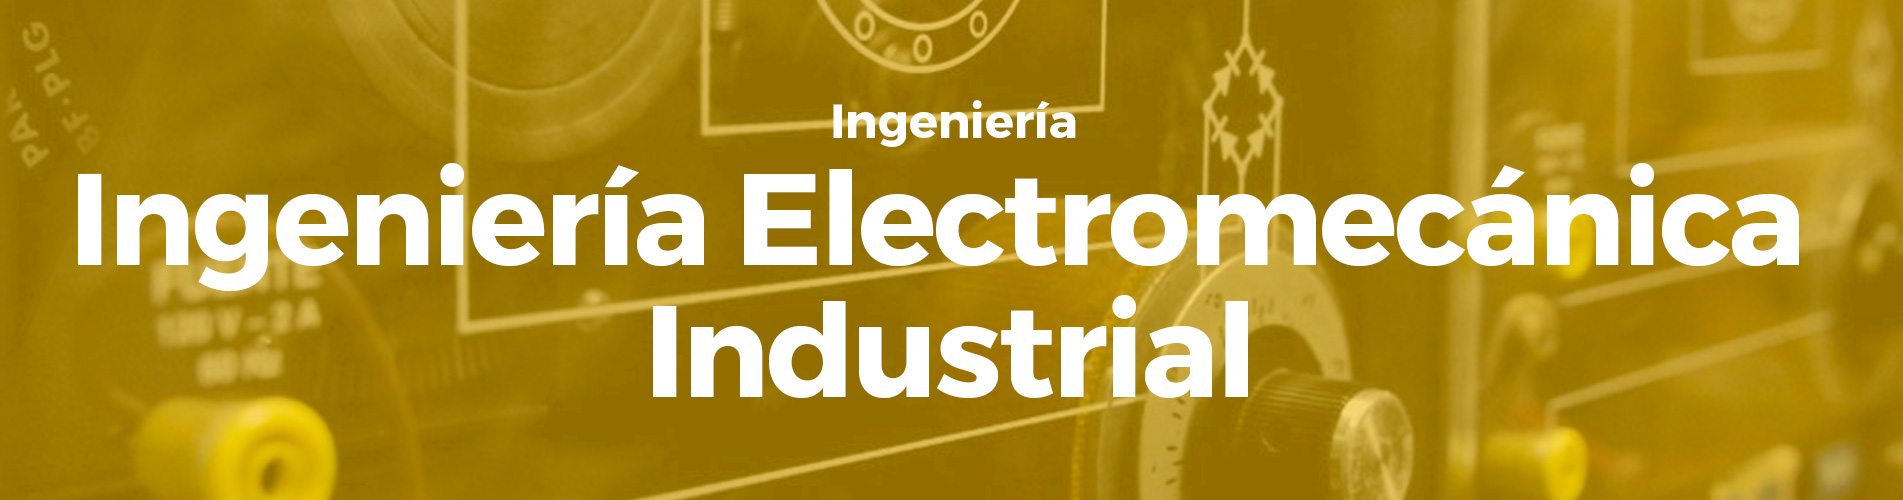 Ingeniería Electromecánica Industrial